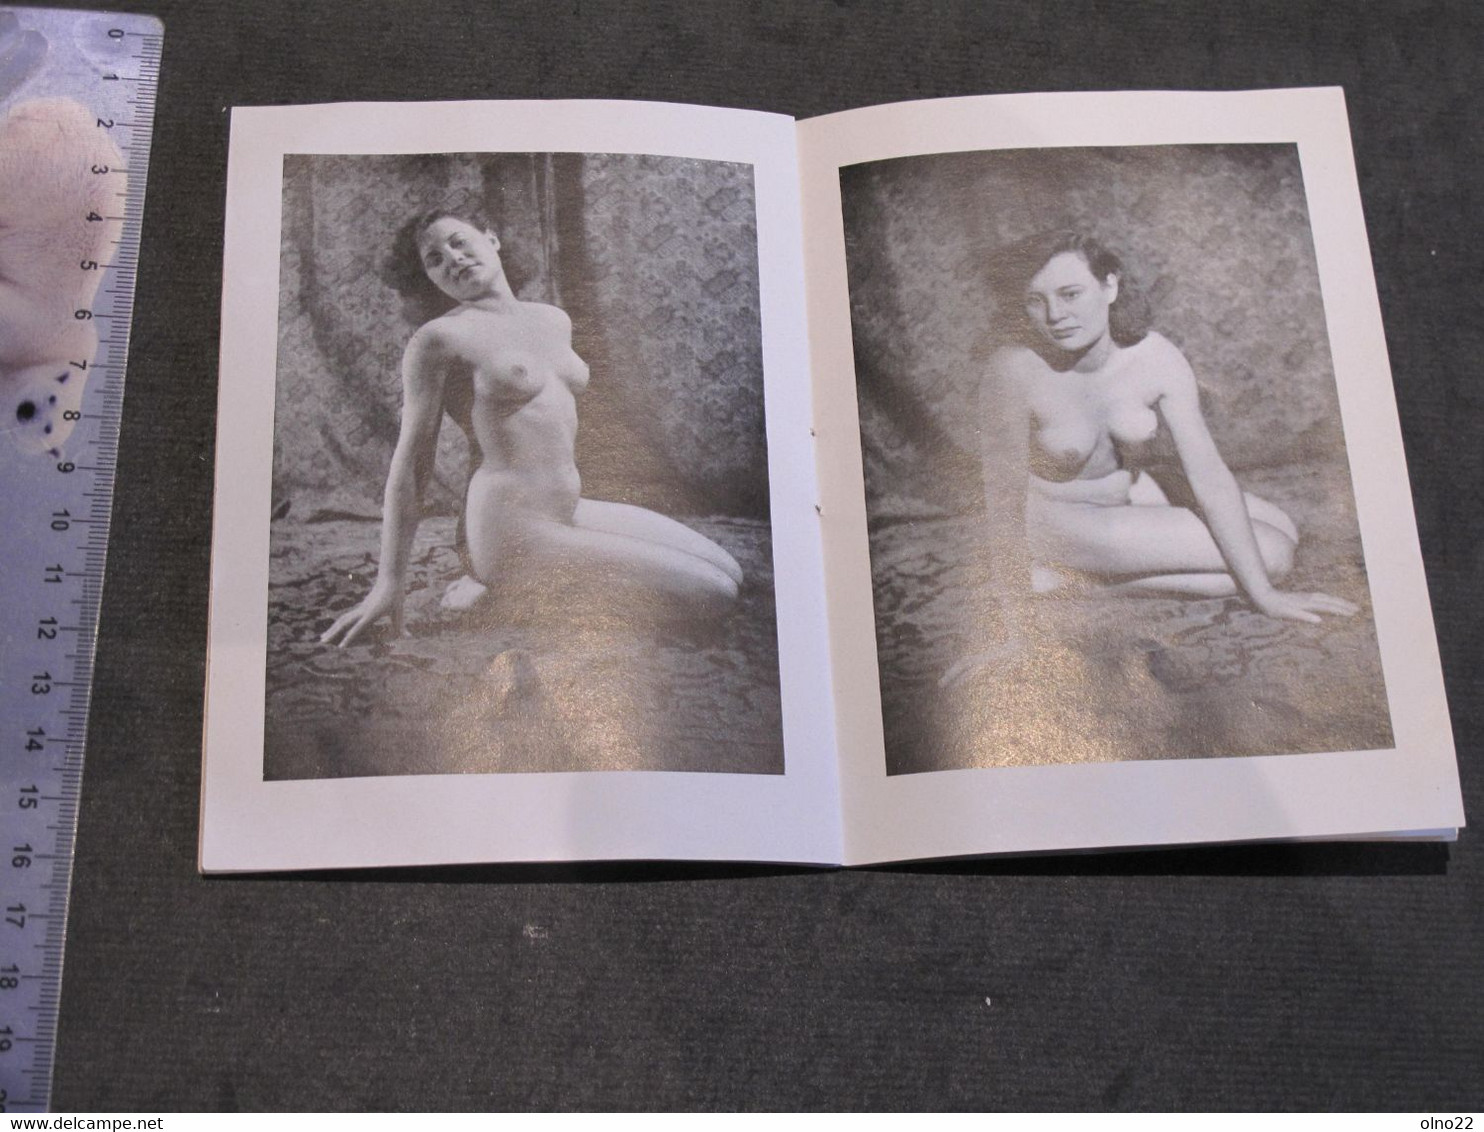 HARMONIE - CAMERA BIELD KIEL - PETIT RECUEIL DE 15 PHOTOS N/B DE NUS FEMININS EDITION ALLEMANDE - CIRCA ANNEES 50 - Fotografie